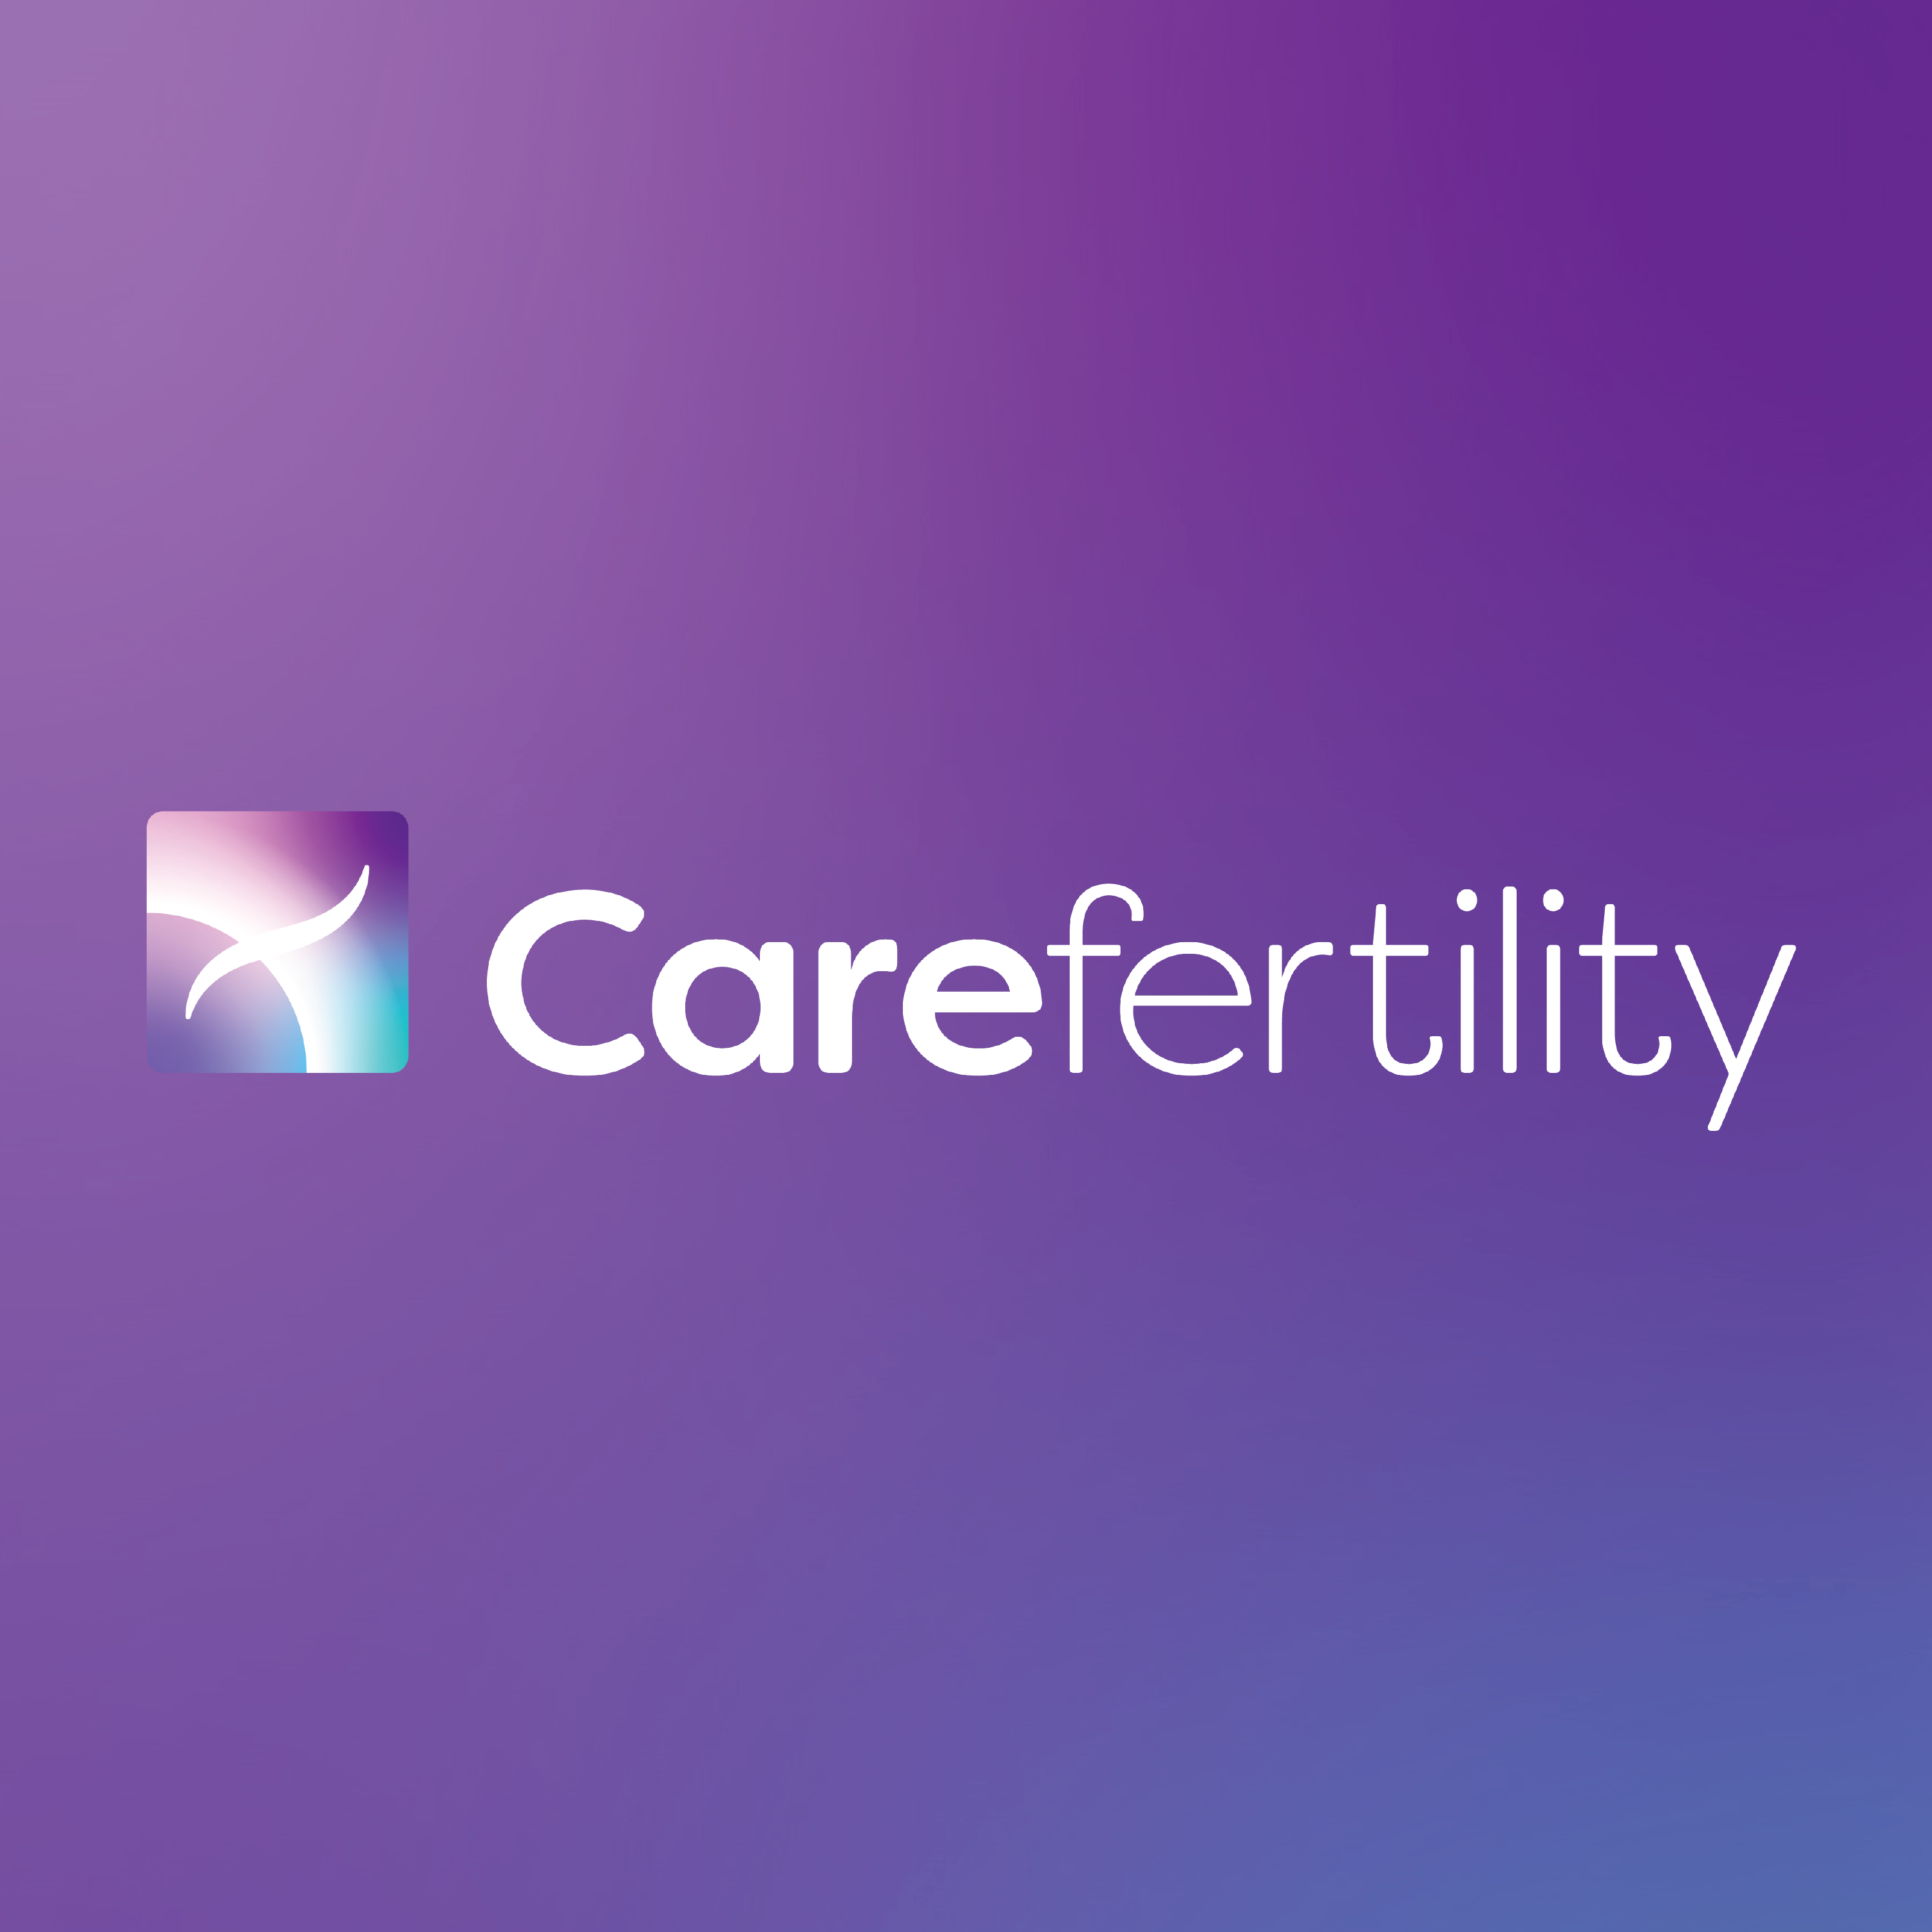 Care Fertility - Lancaster, Lancashire LA1 1RS - 01524 580958 | ShowMeLocal.com